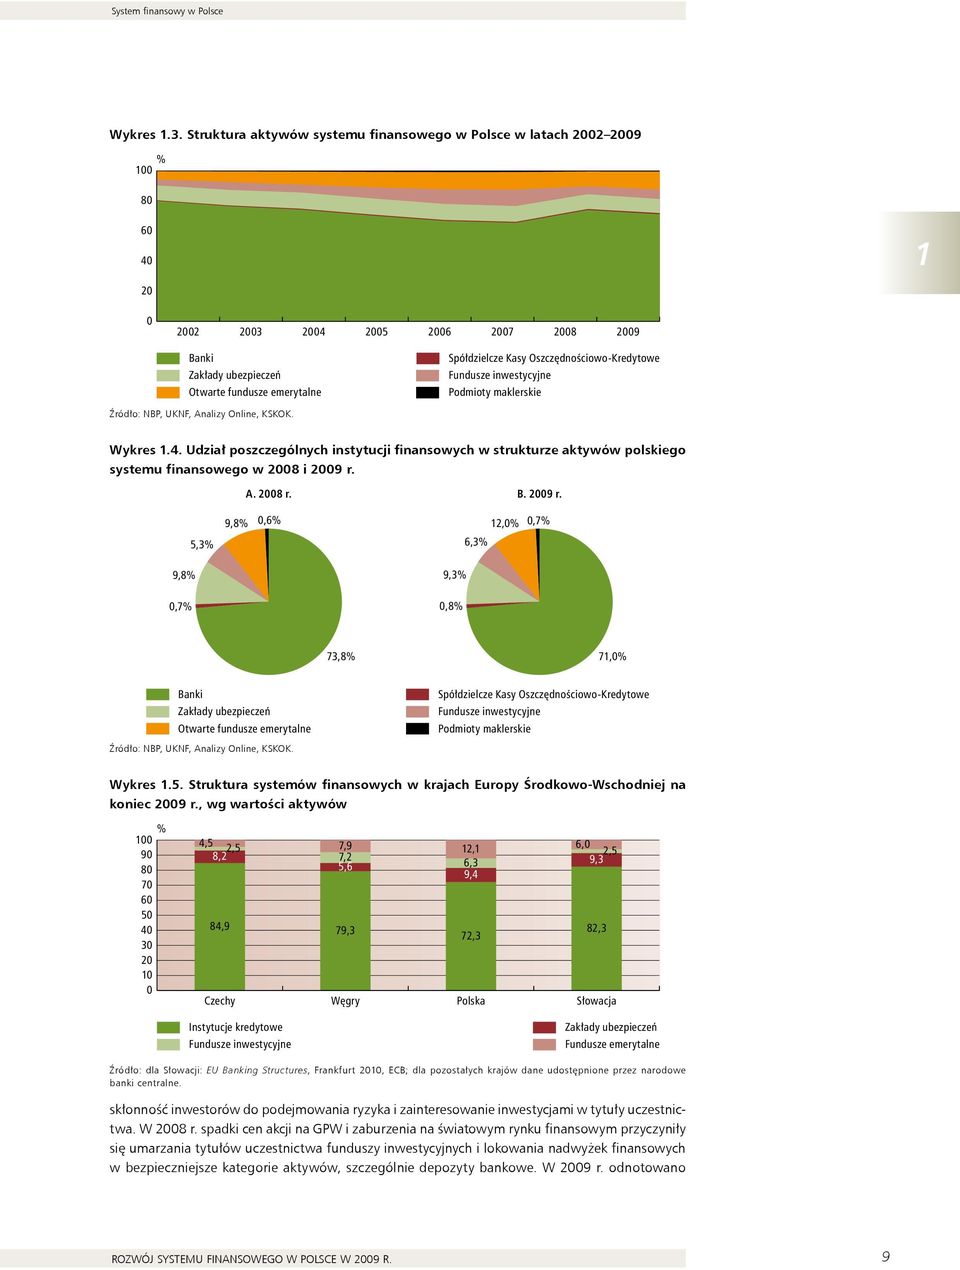 Fundusze inwestycyjne Podmioty maklerskie Źródło: NBP, uknf, Analizy Online, KSKOK. Wykres 1.